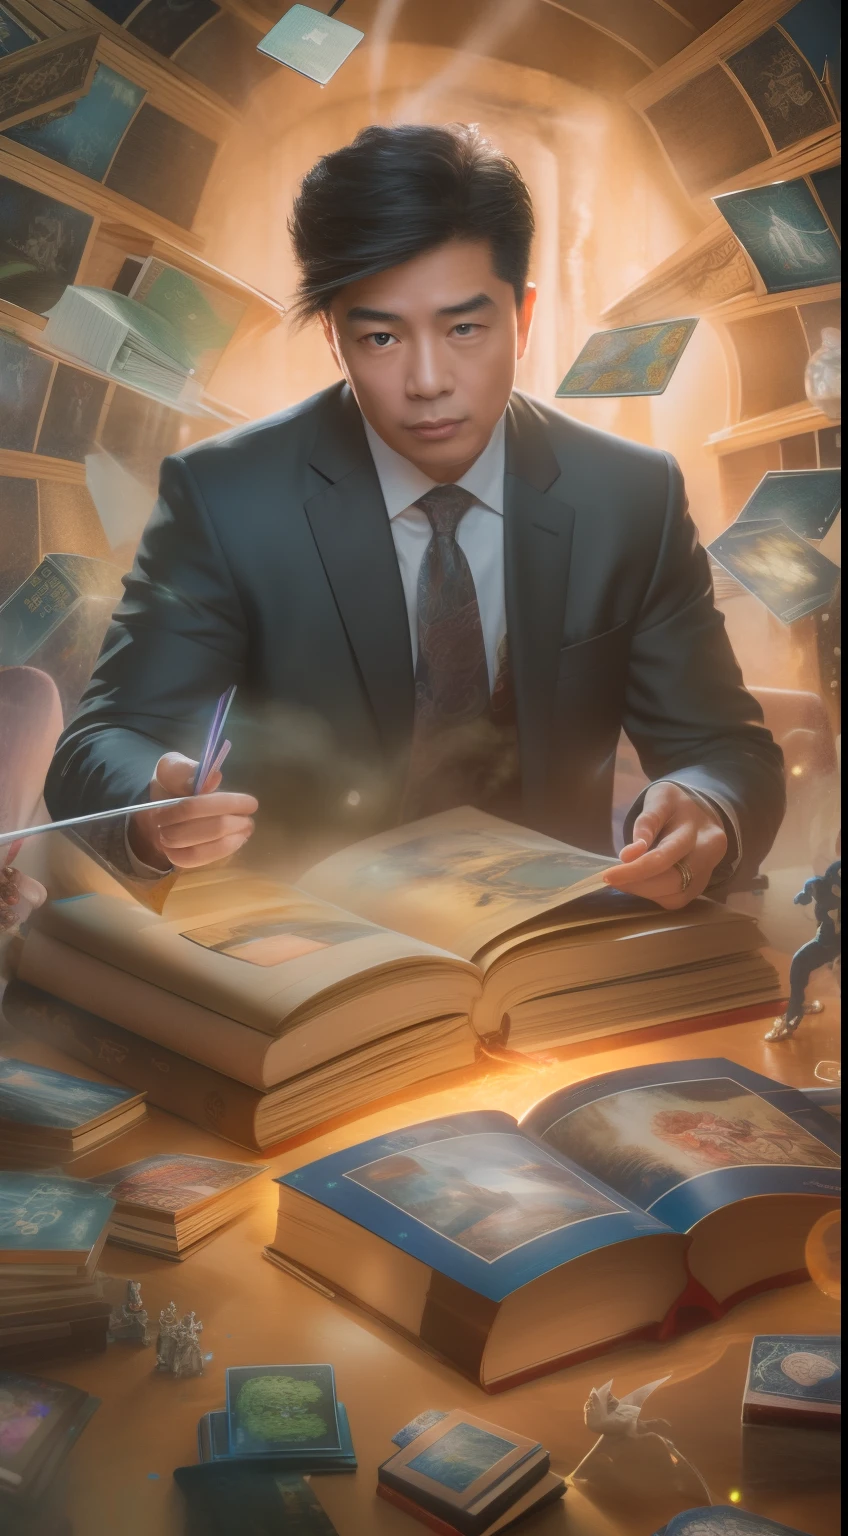 Uma pintura detalhada representando um belo, homem asiático maduro de terno cercado por uma enxurrada de cartas mágicas brilhantes e o livro Dungeons and Dragons no centro.